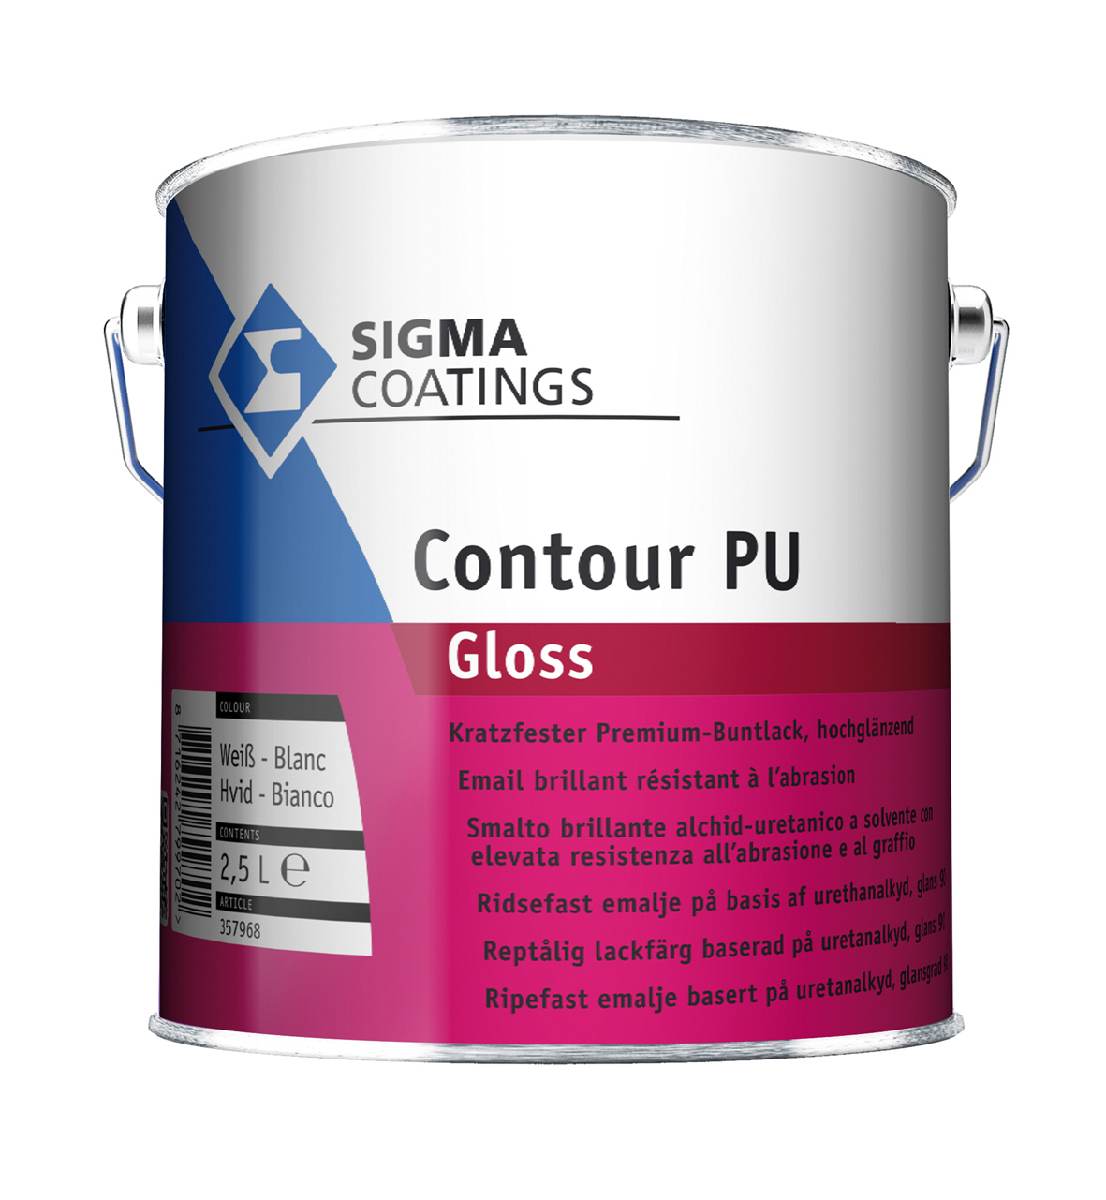 Sigma Contour PU Gloss Premium-Acryl-Buntlack 2,5 L in Weiß, kratz- und abriebbeständig